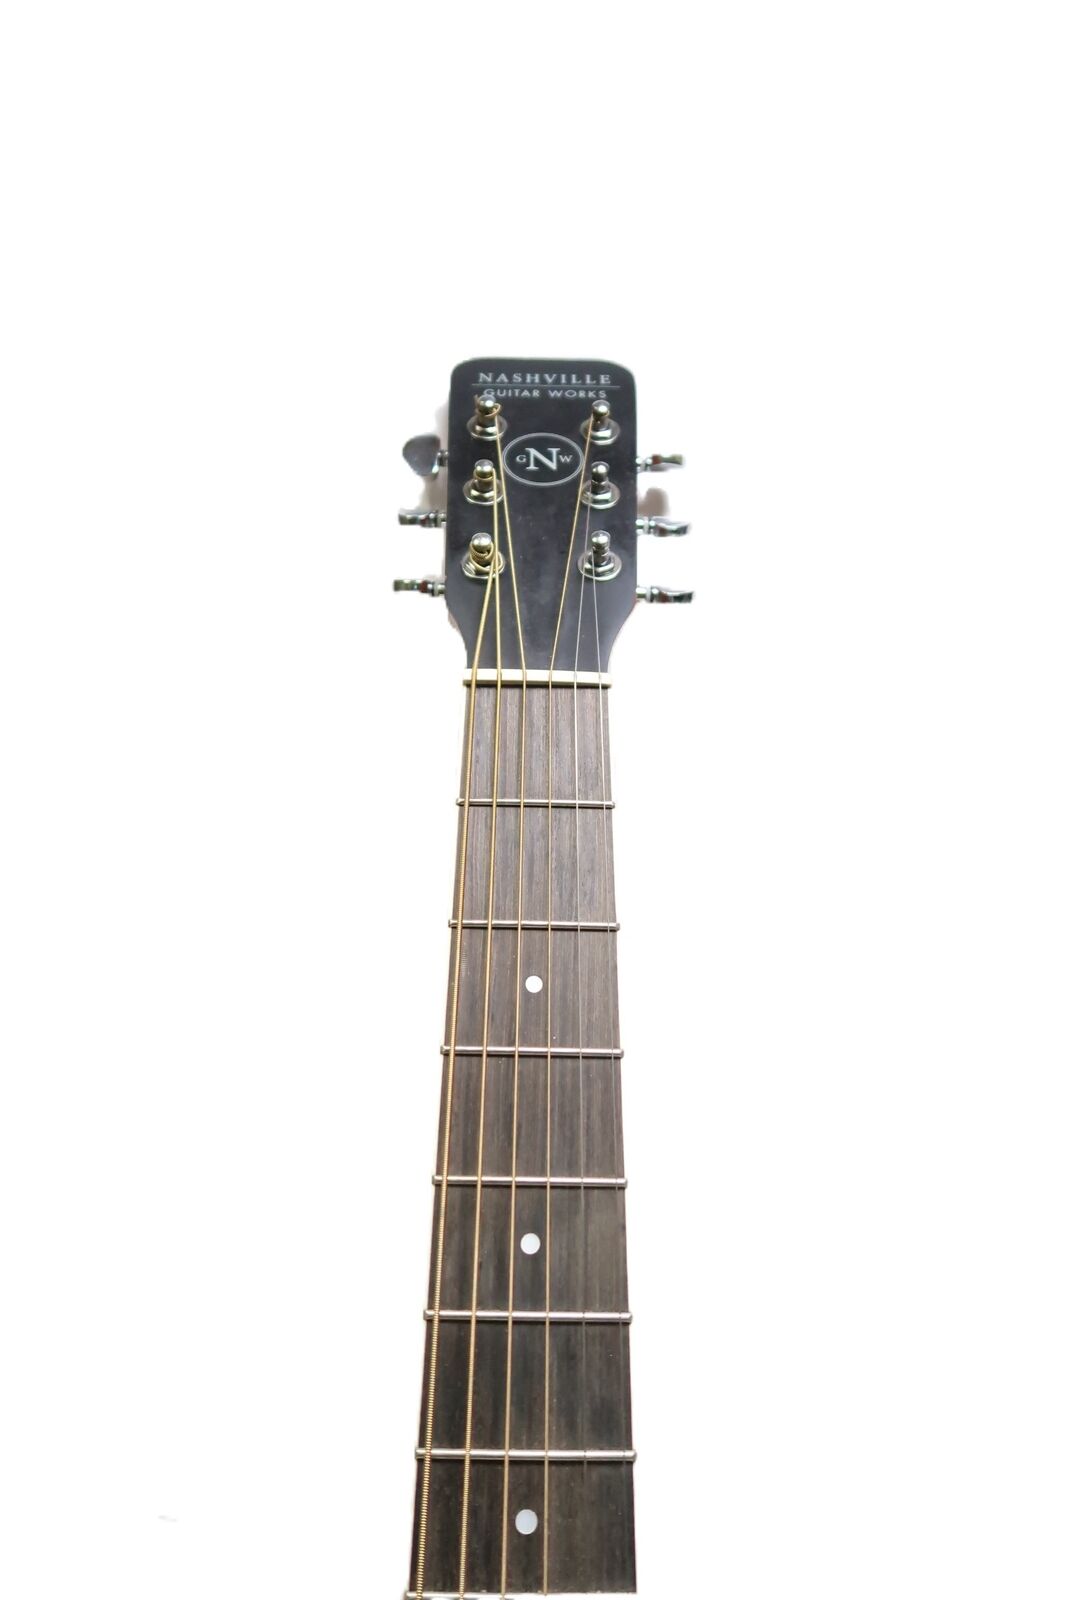 Nashville Guitar Works D10 Acoustic Guitar 9788 3